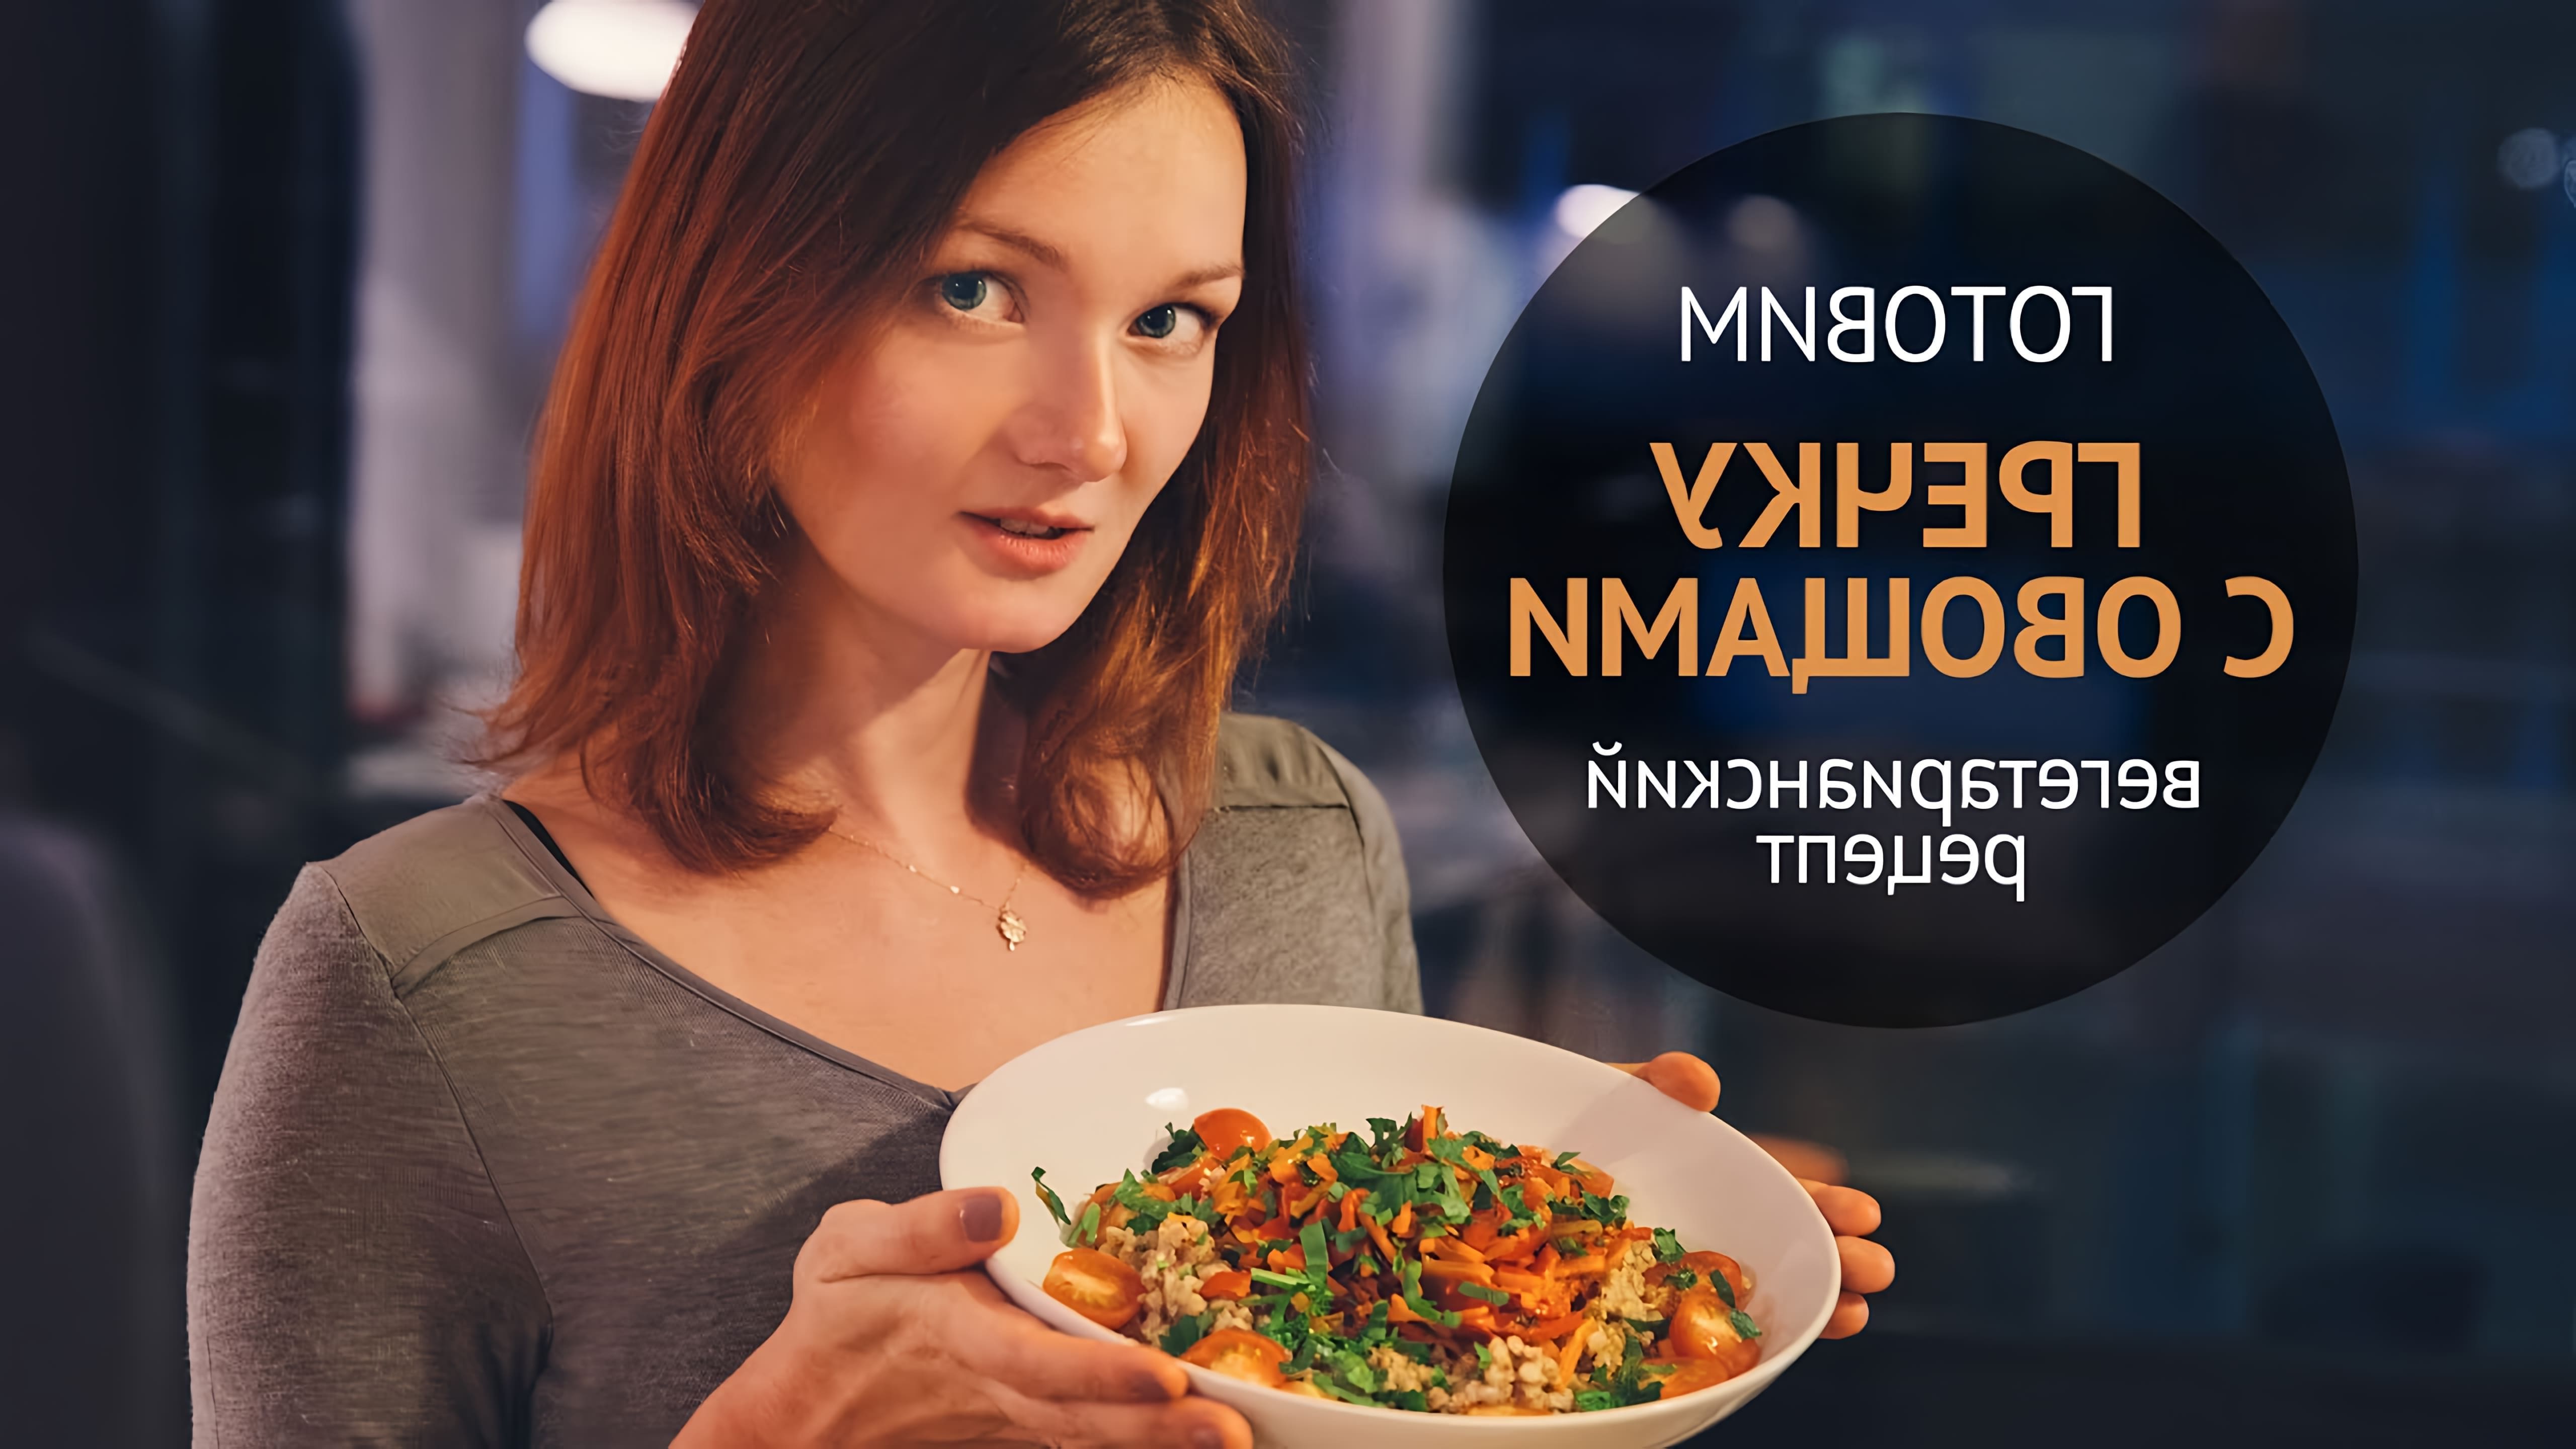 В этом видео Наташа показывает, как приготовить вегетарианское блюдо из гречки с овощами